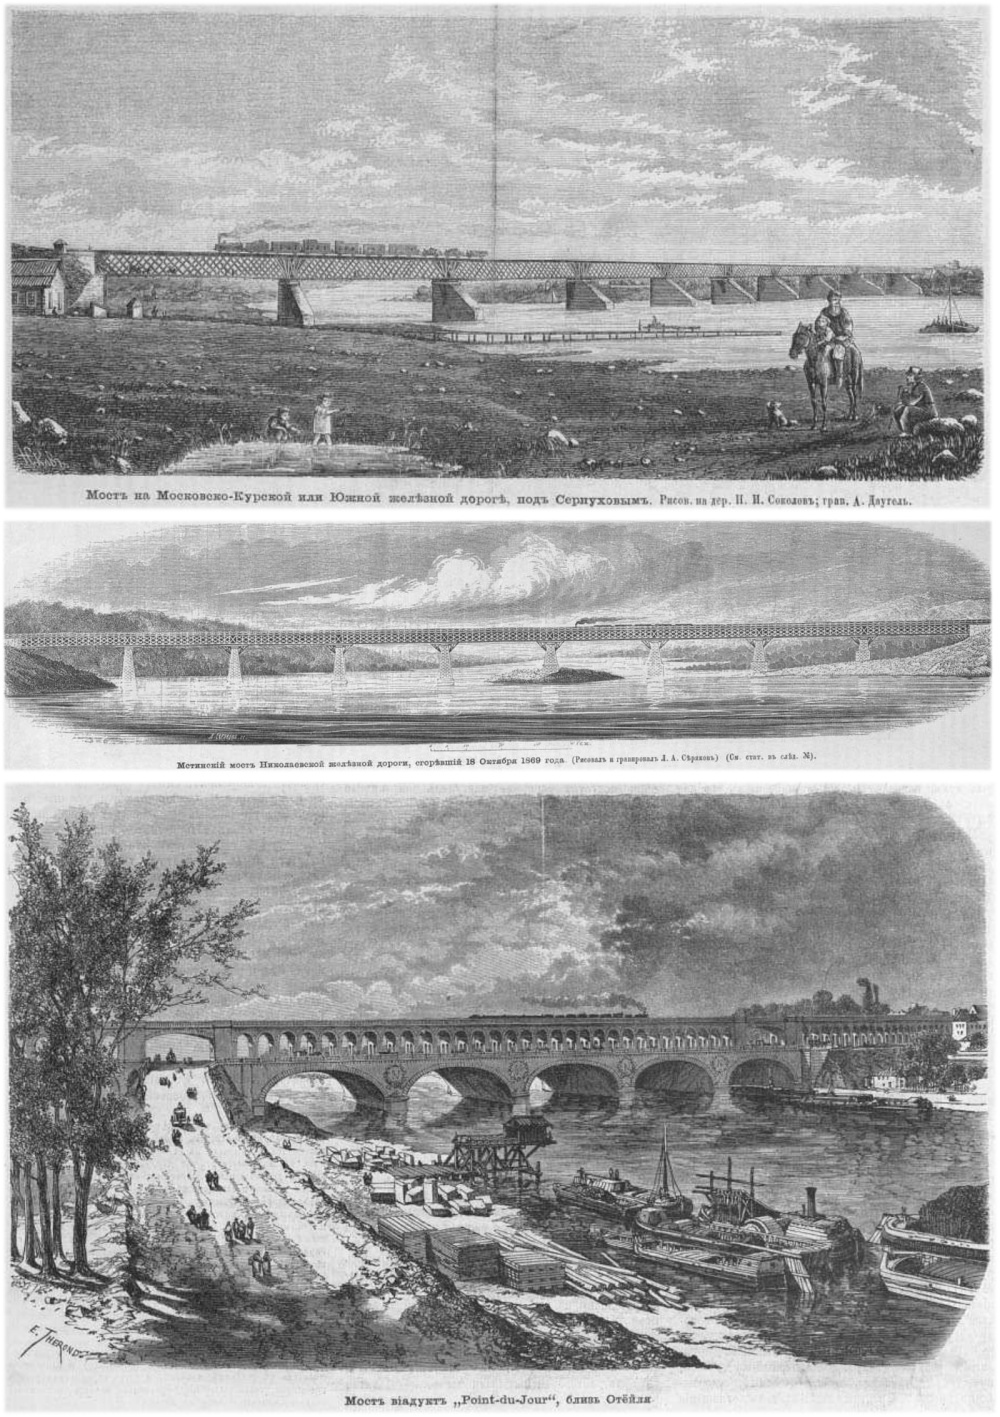 Технический прогресс 150 лет назад, отображенный на страницах издания «Всемирная иллюстрация» мир